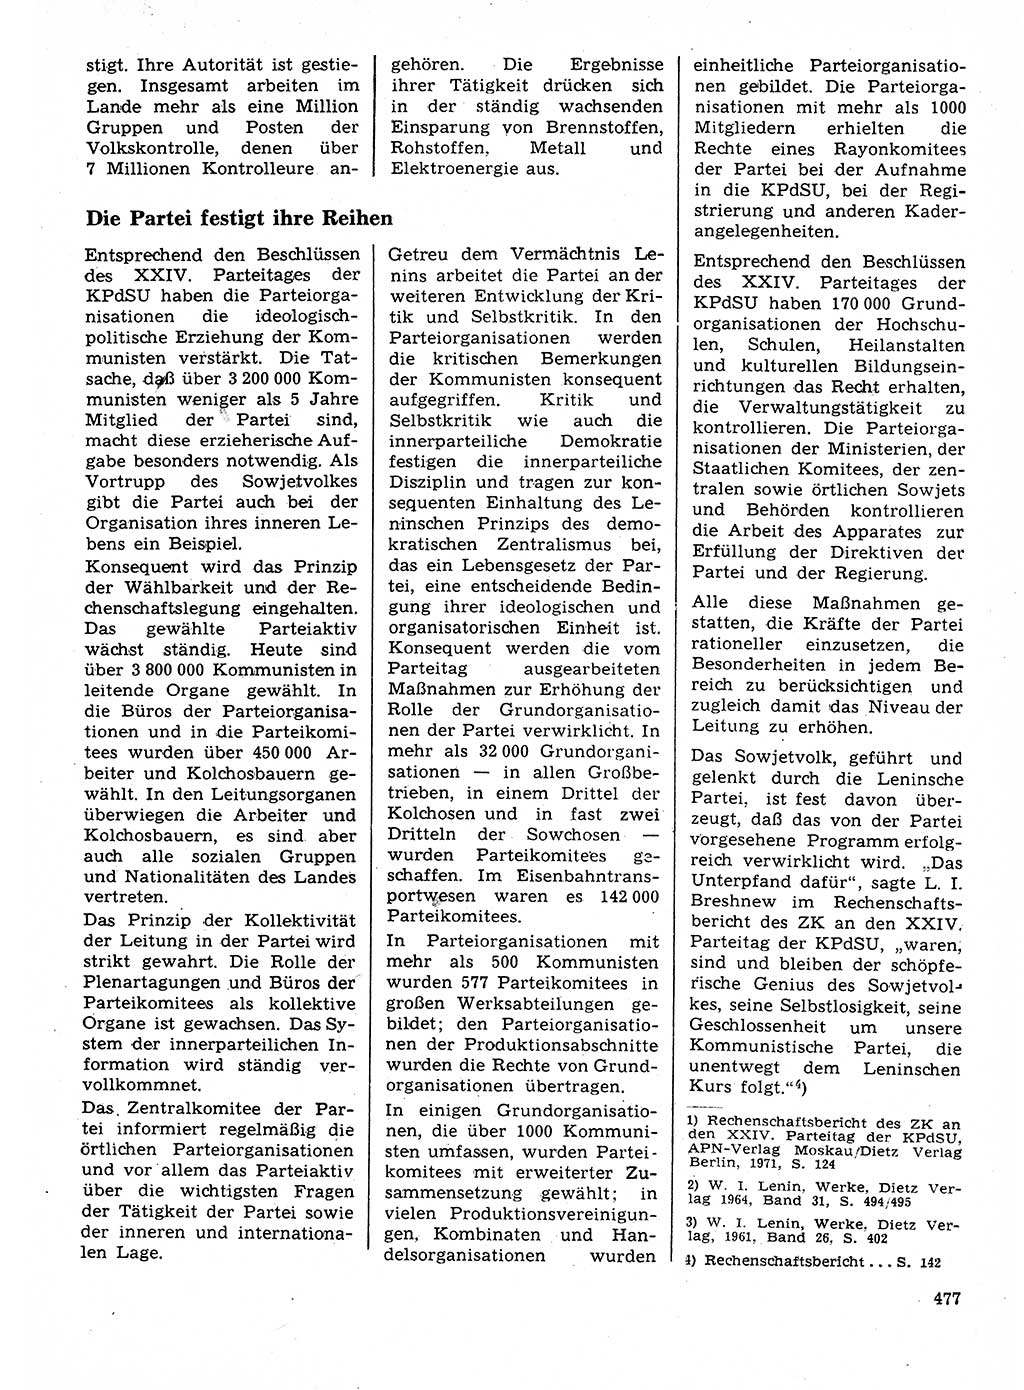 Neuer Weg (NW), Organ des Zentralkomitees (ZK) der SED (Sozialistische Einheitspartei Deutschlands) für Fragen des Parteilebens, 28. Jahrgang [Deutsche Demokratische Republik (DDR)] 1973, Seite 477 (NW ZK SED DDR 1973, S. 477)